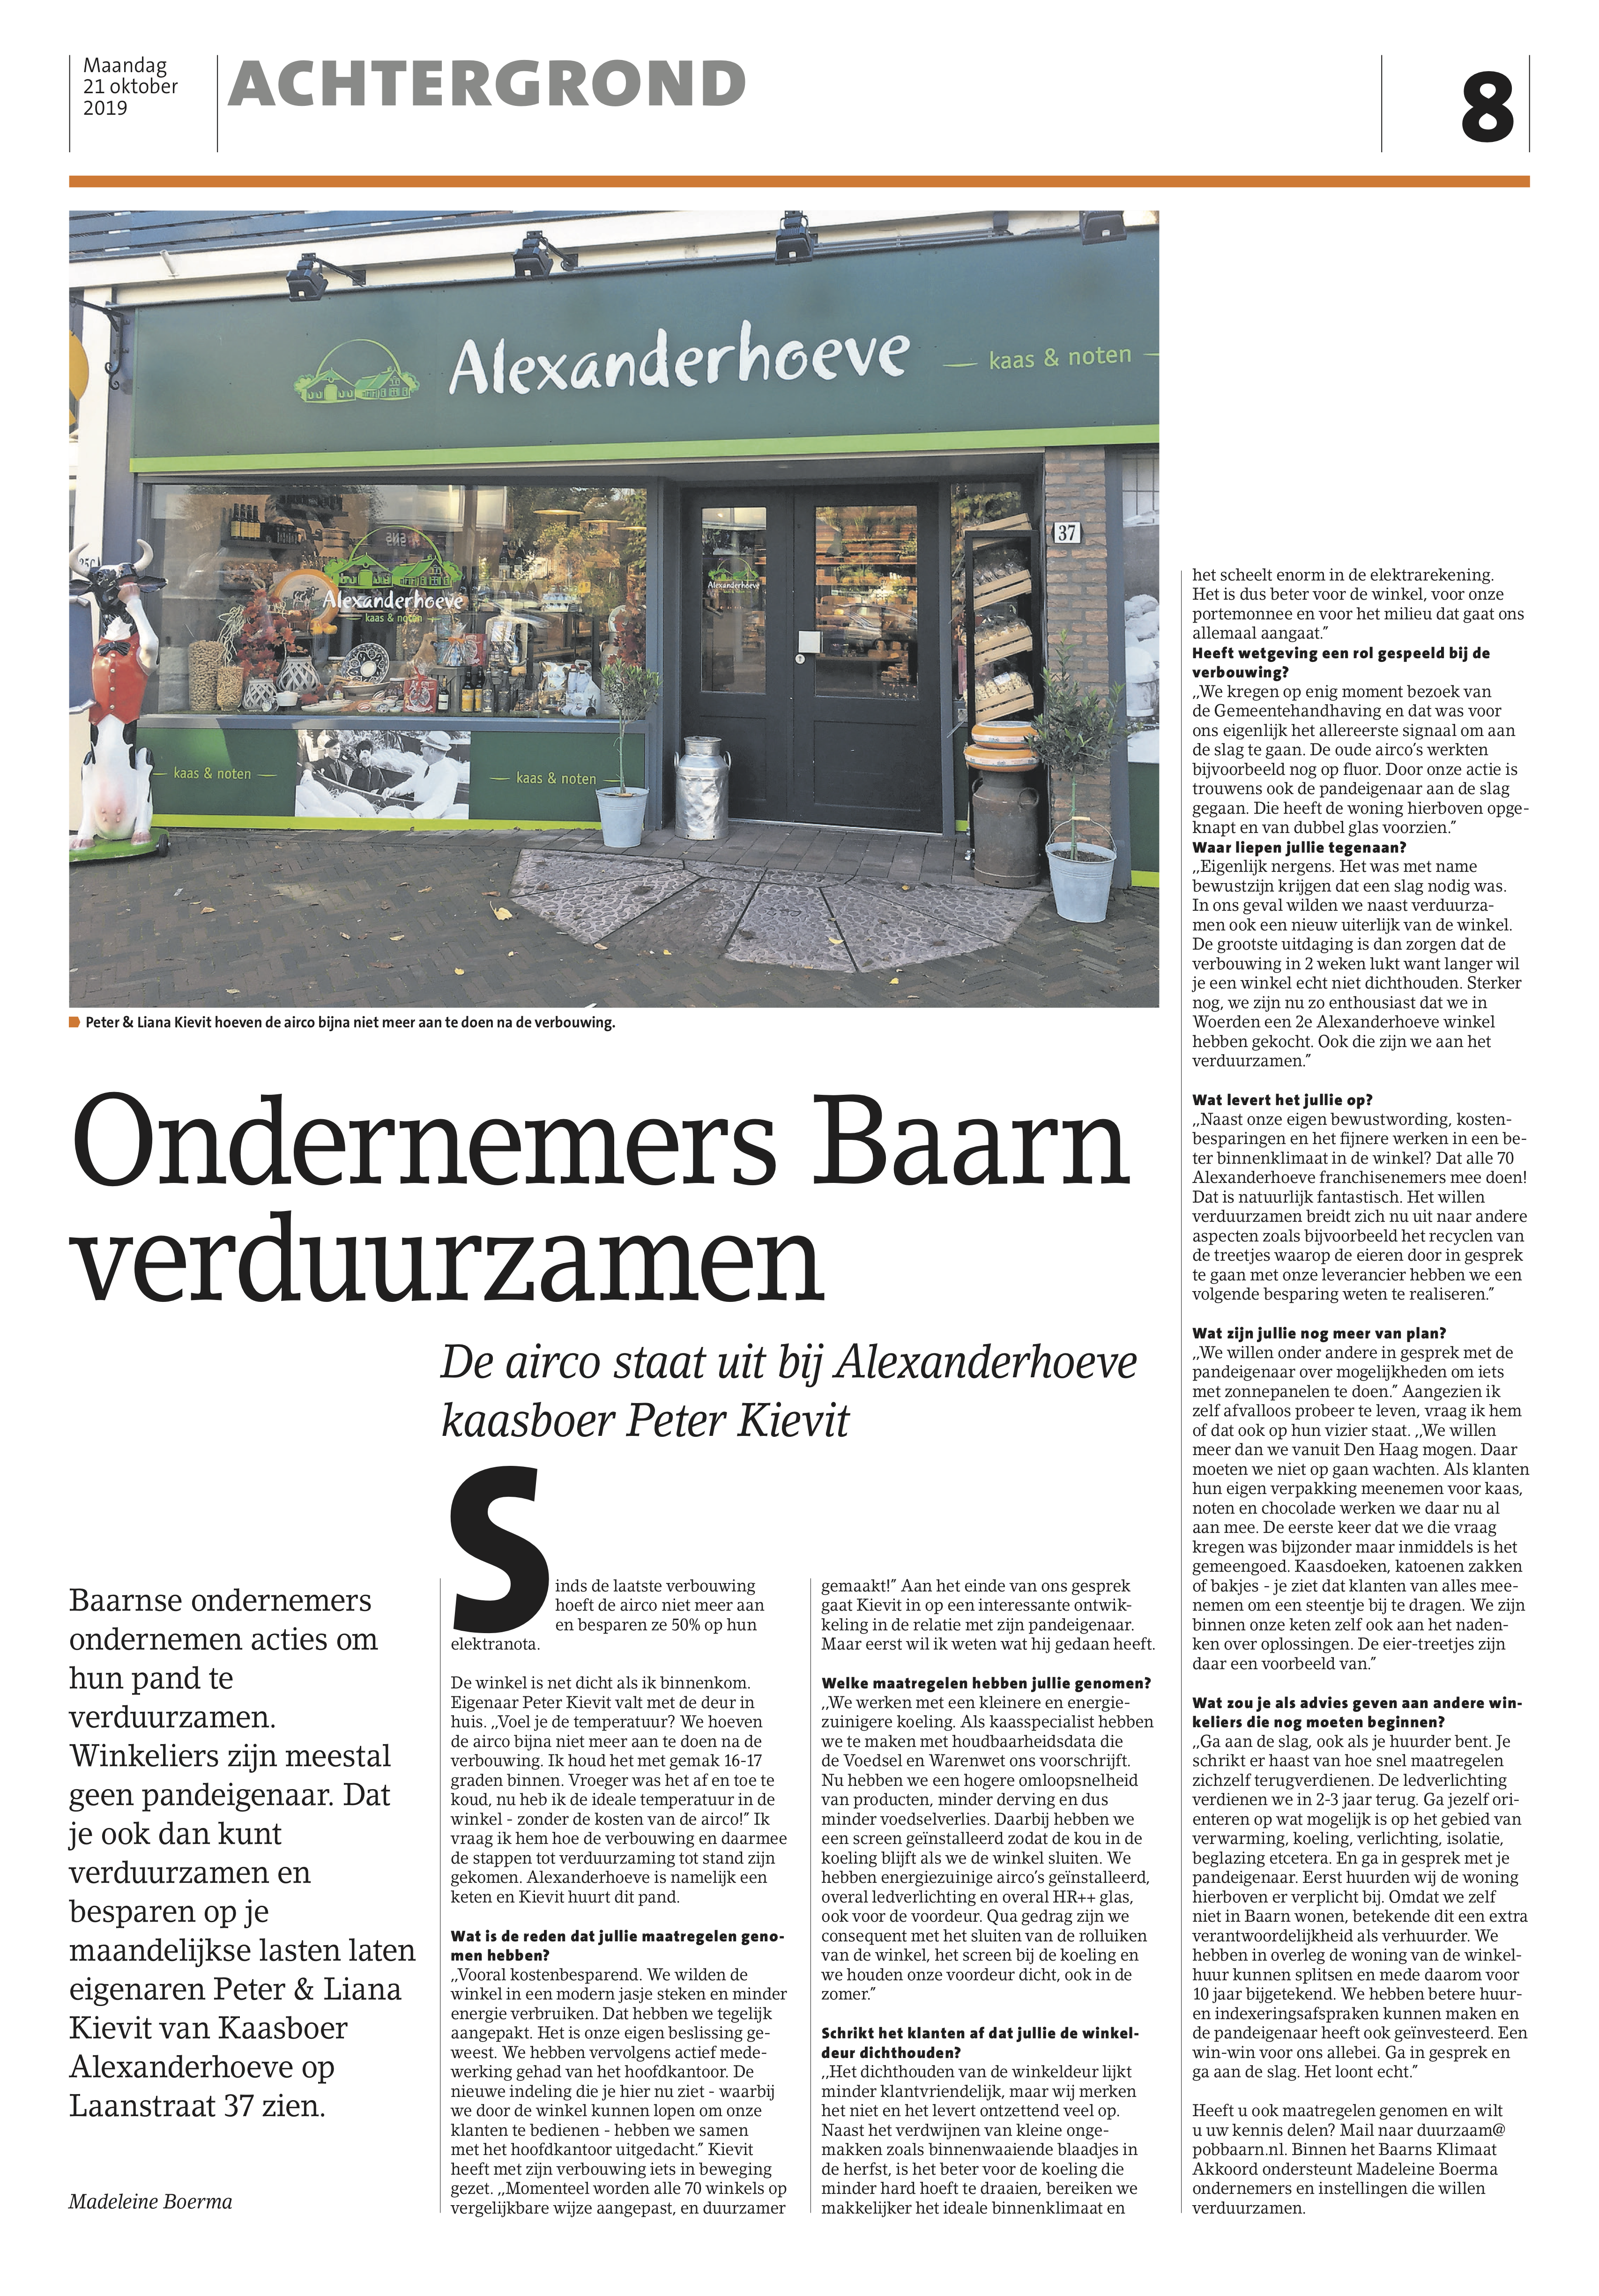 Foto van artikel over Kaasboer Alexanderhoeve_in Baarnsche Courant_door Madeleine Boerma